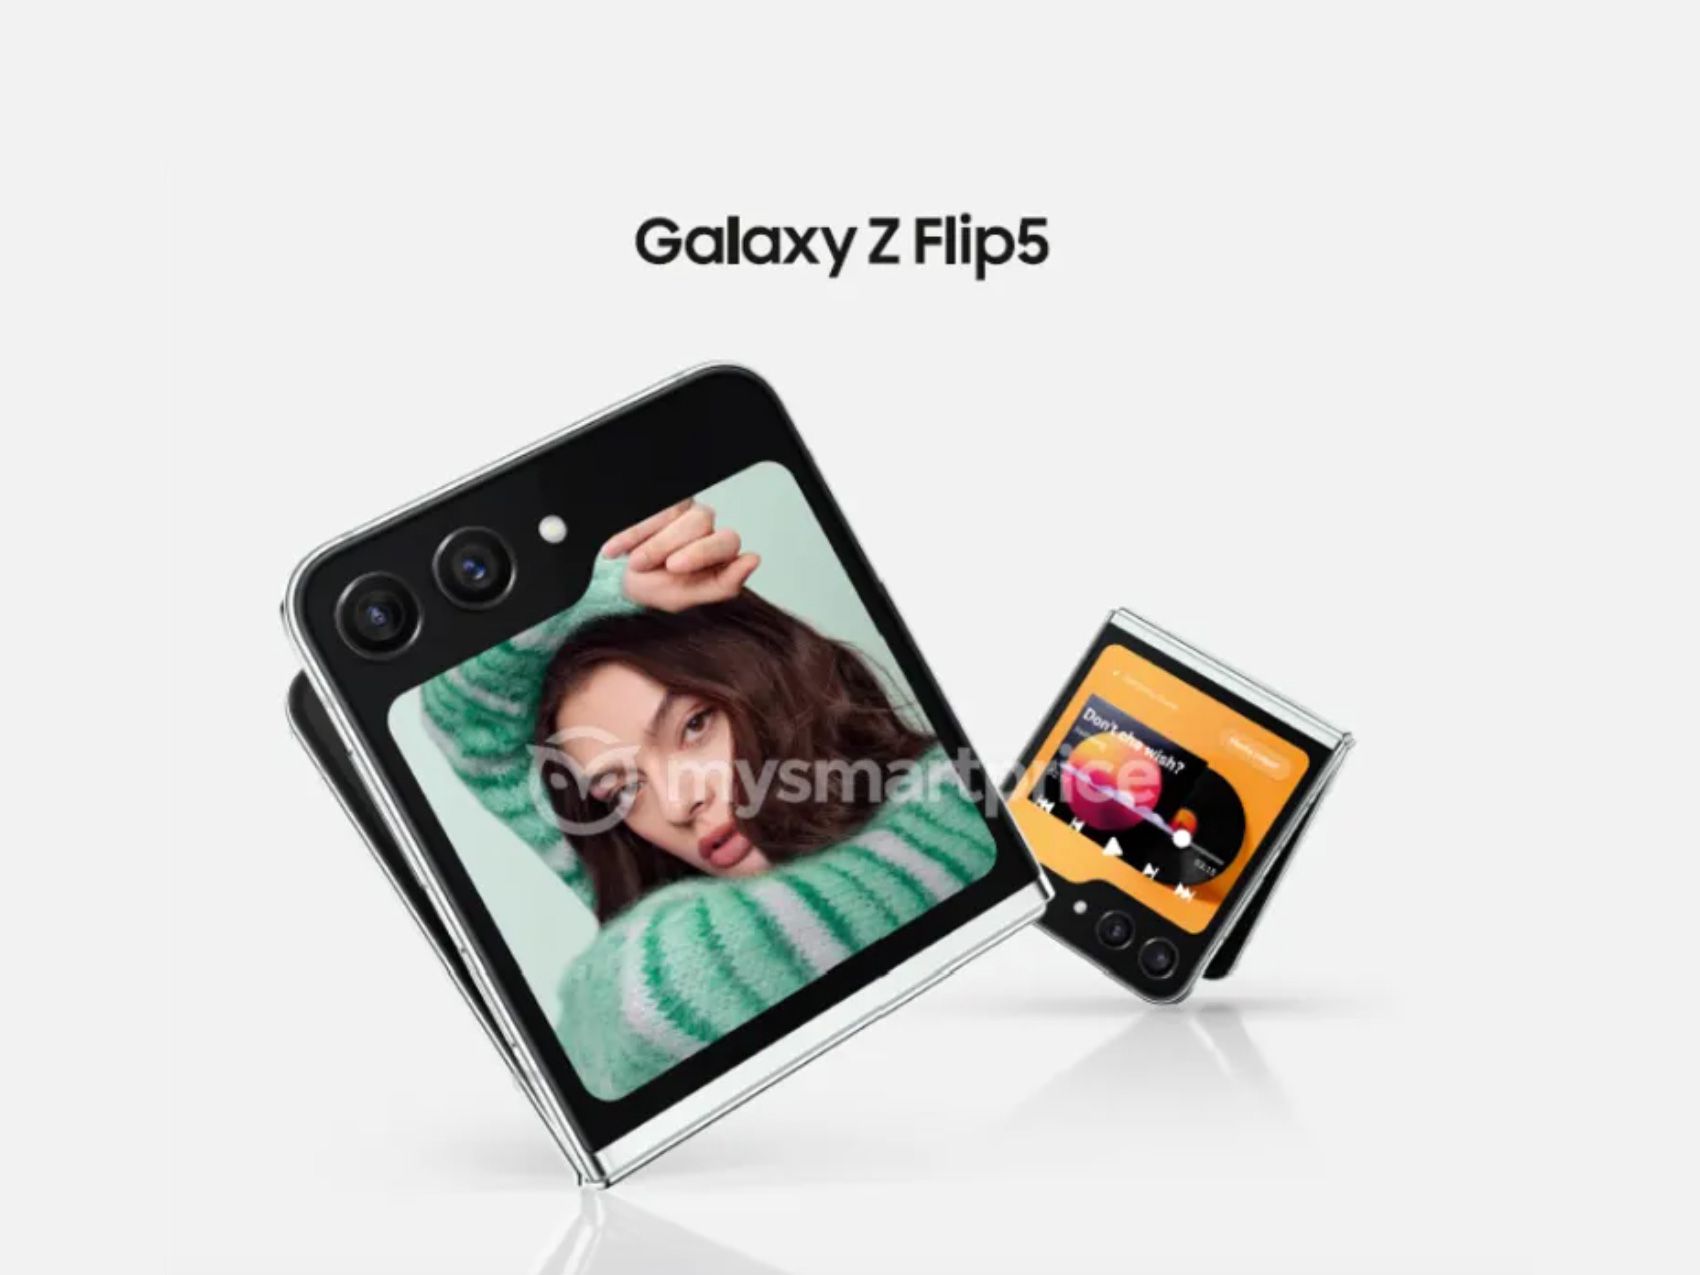 +20%: Samsung potrebbe aumentare significativamente il prezzo del Galaxy Flip 5 clamshell